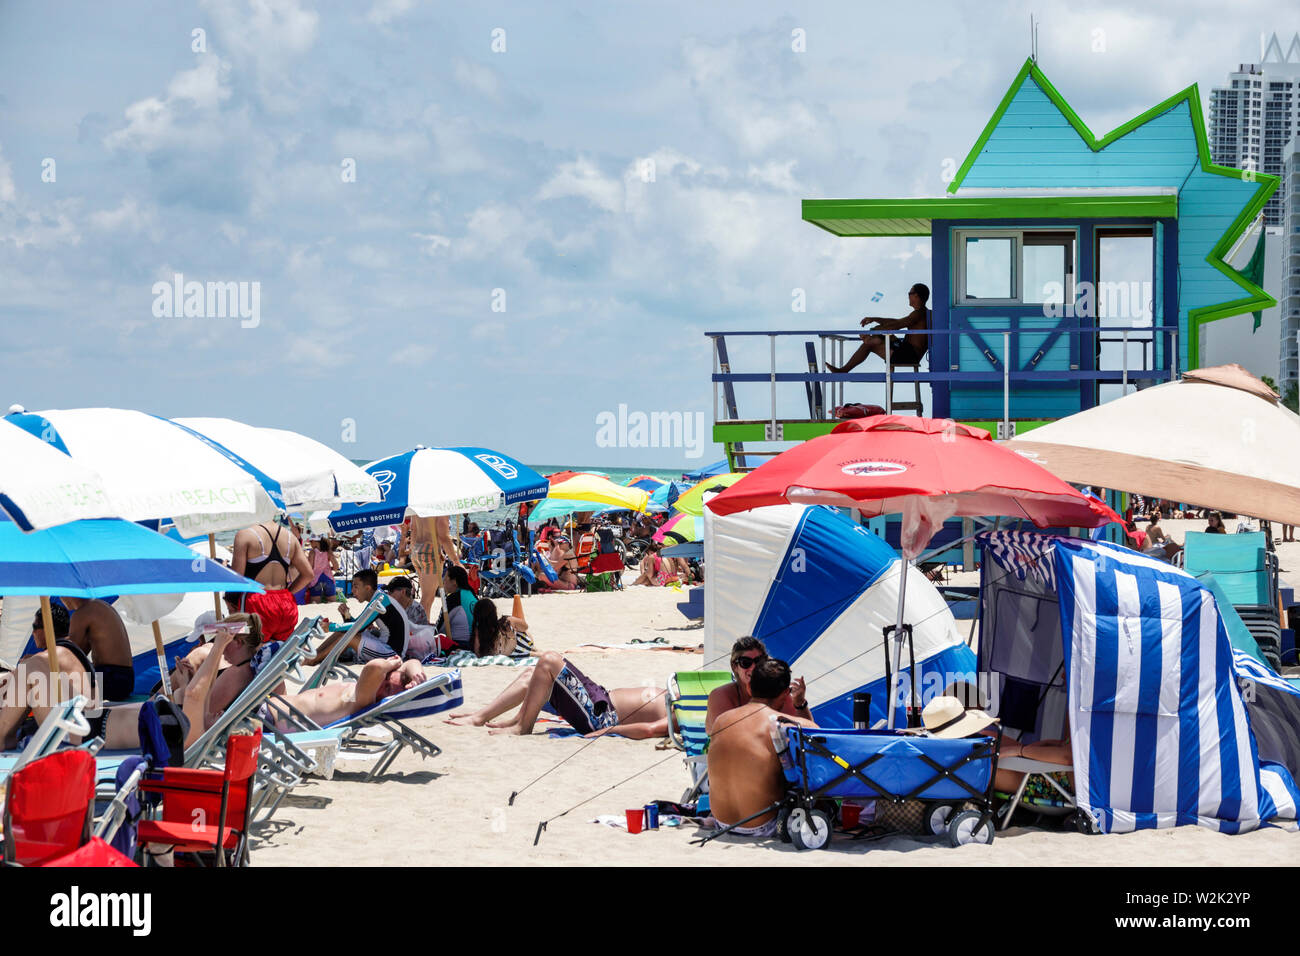 Miami Beach Florida, North Beach, julio de 4th concurrida y concurrida playa pública, sombrillas del Océano Atlántico familias tomando el sol, socorrista torre de la estación, FL19070 Foto de stock